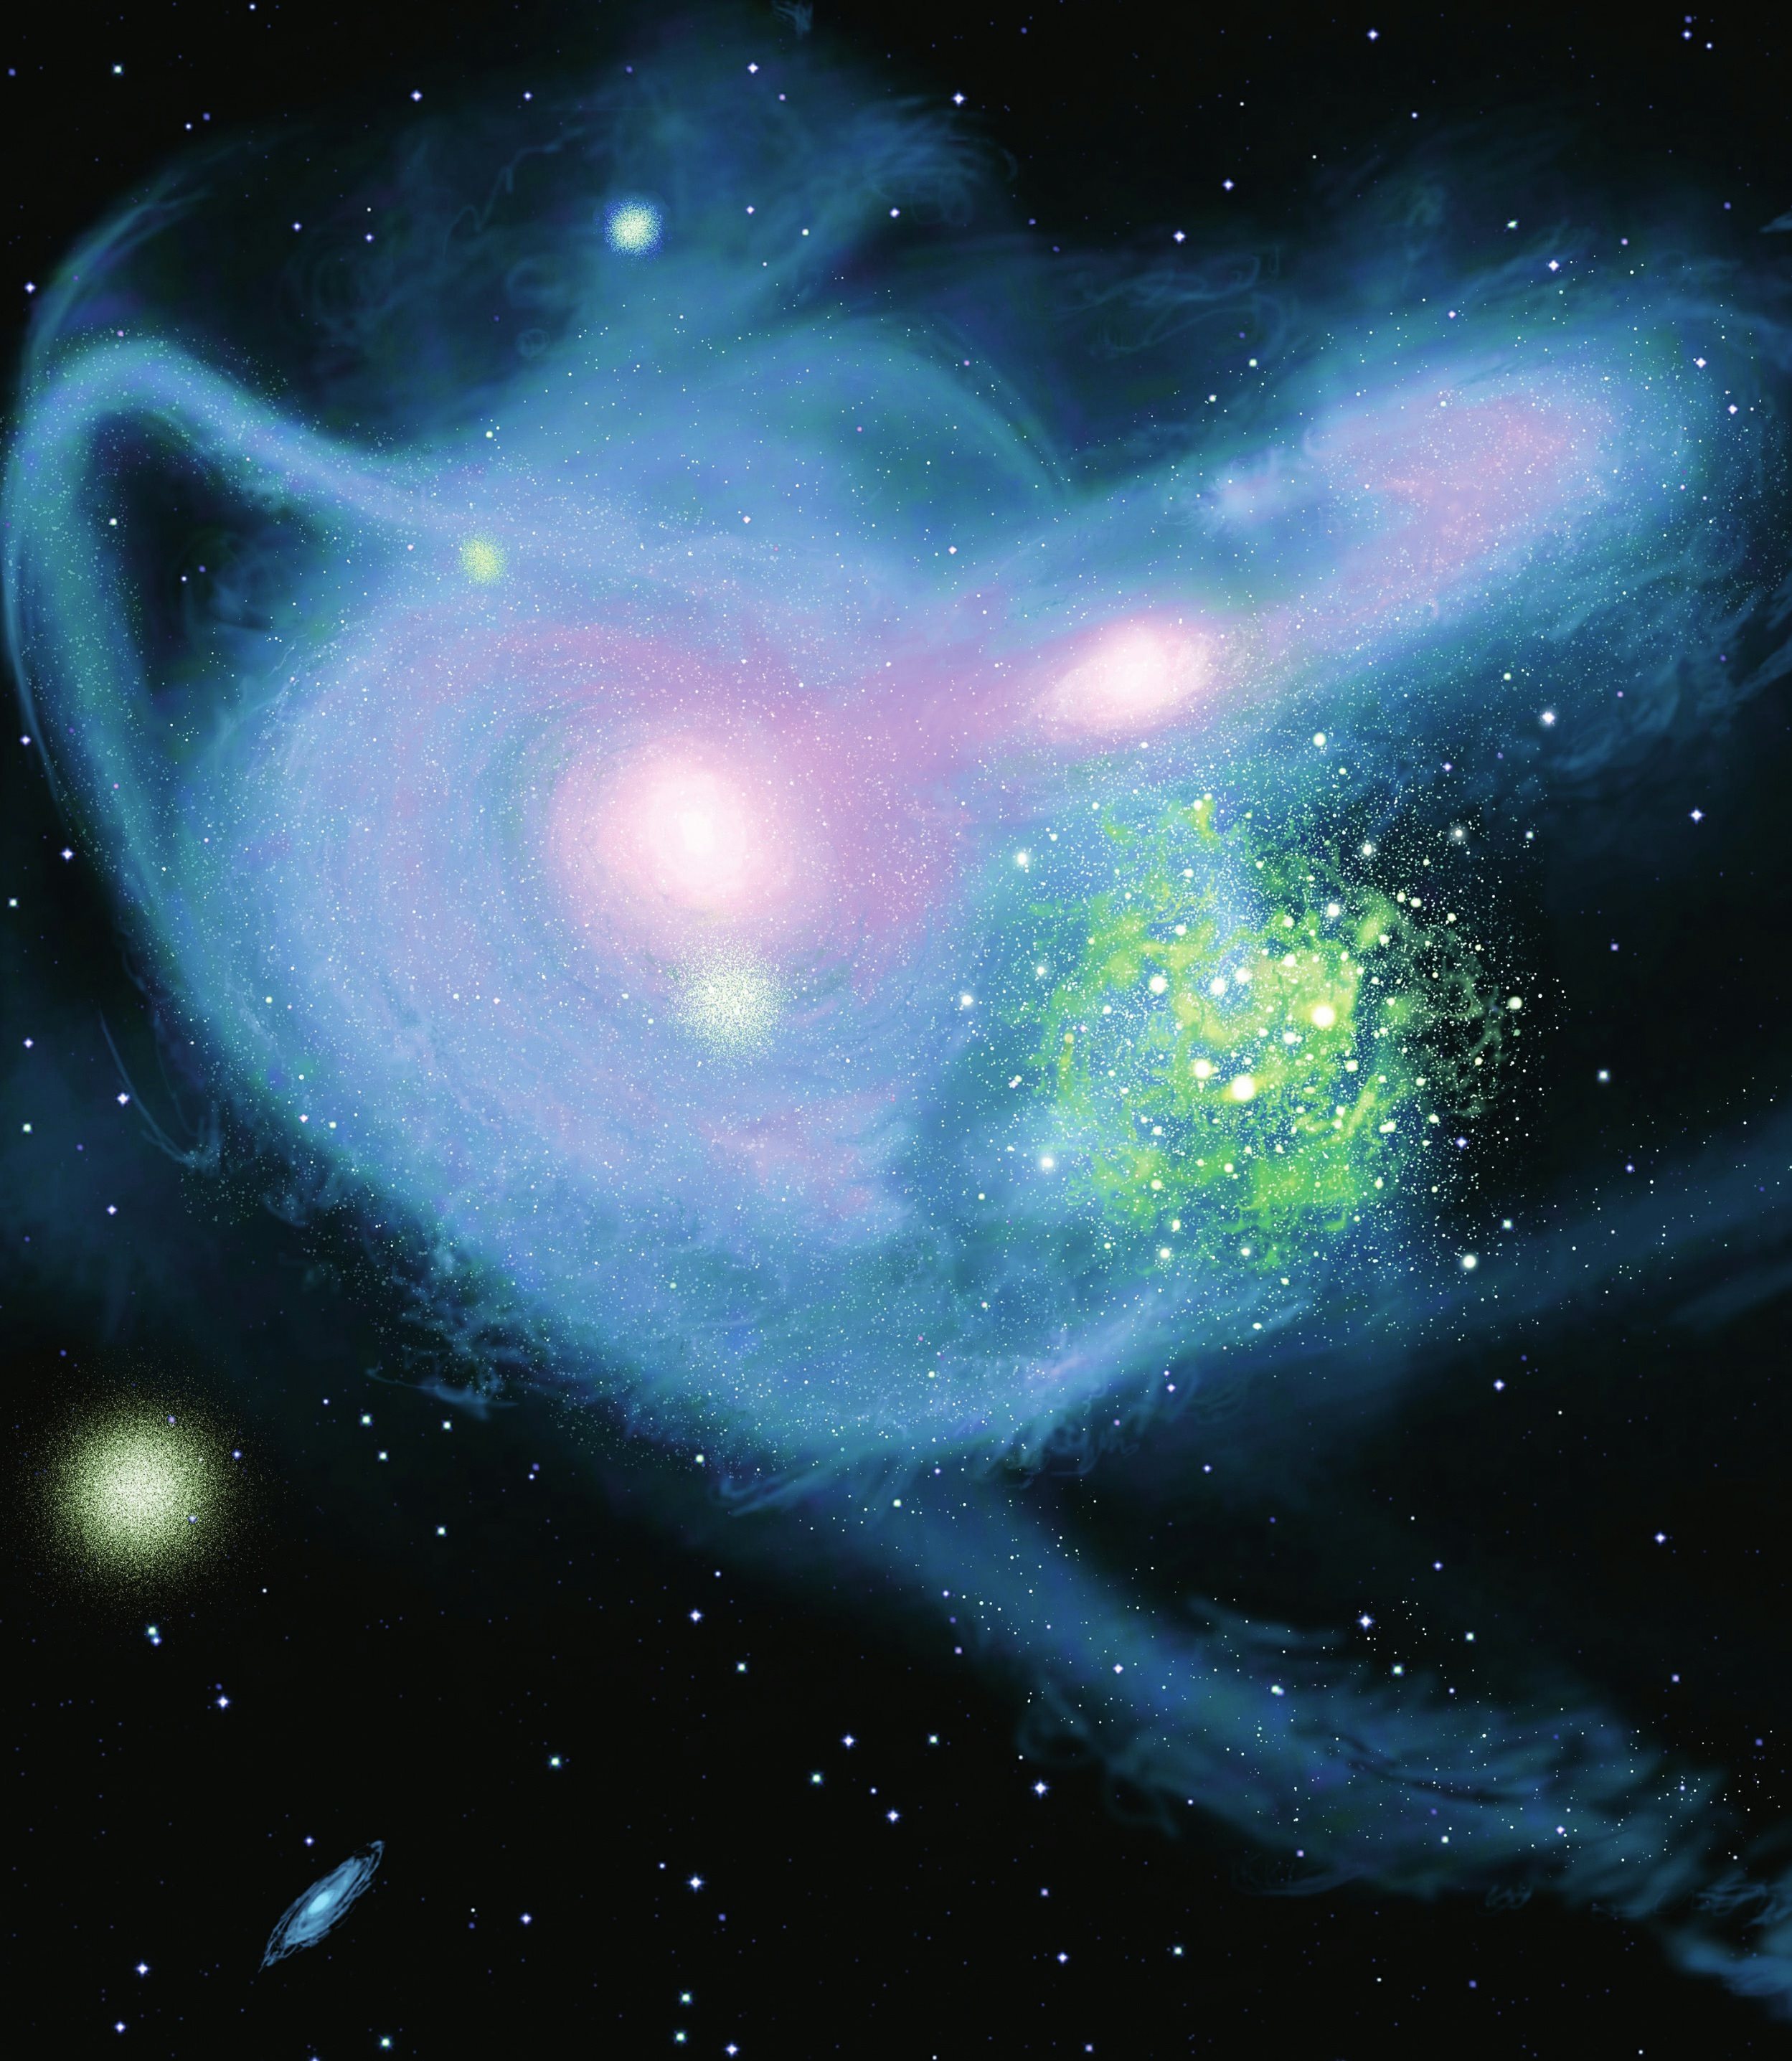 星系与恒星潮汐流的冲撞